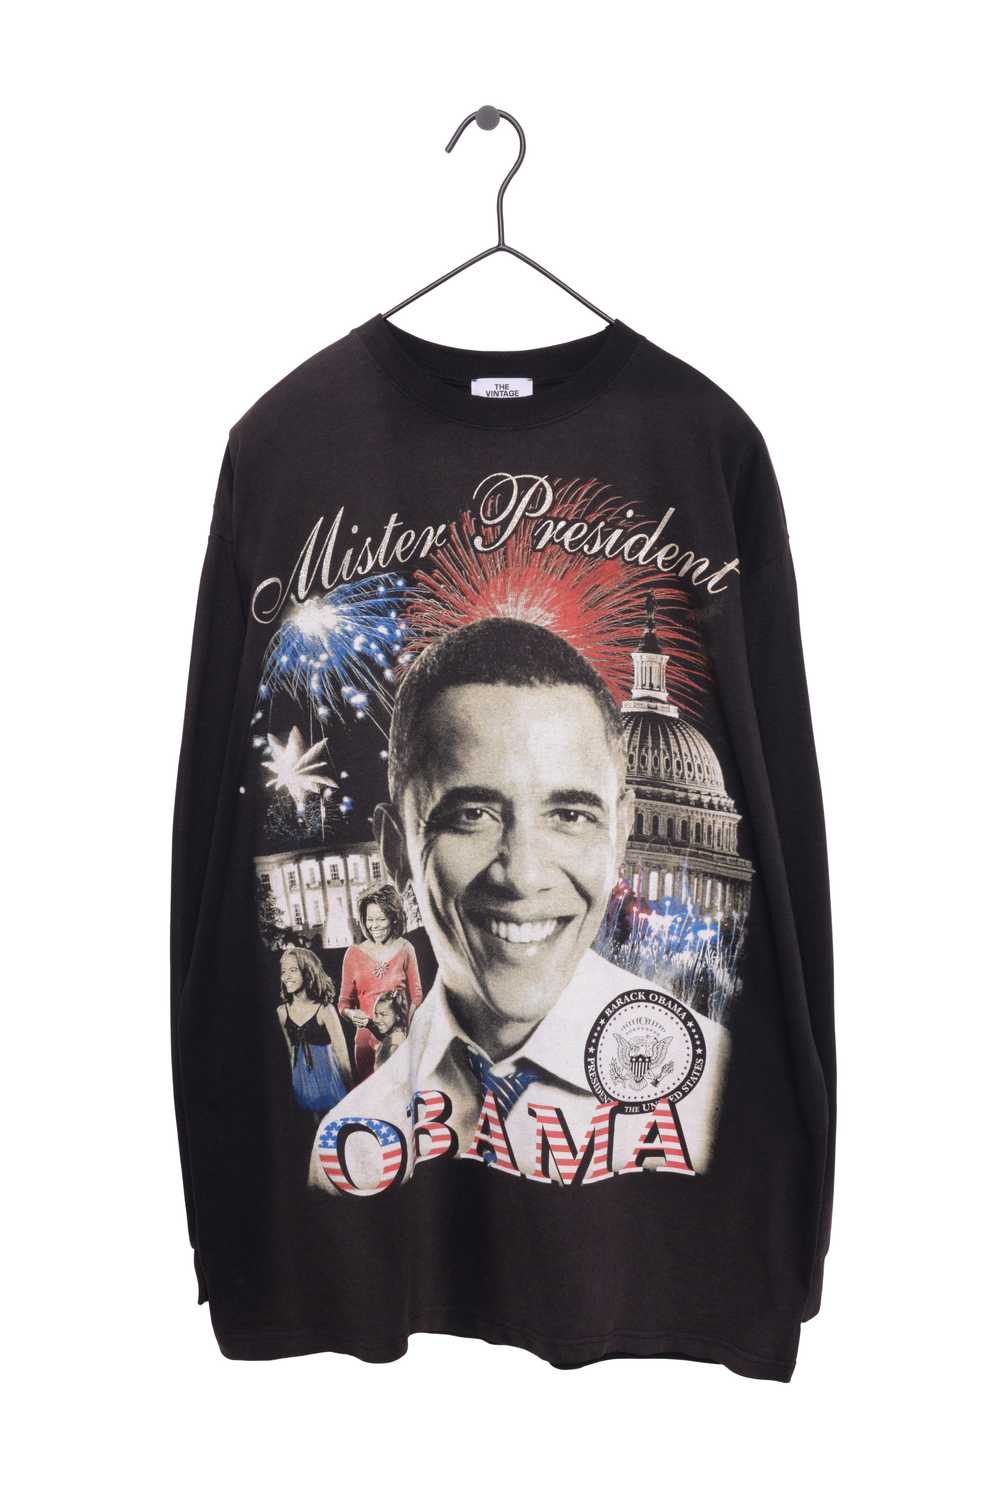 President Obama Long Sleeve Tee - image 1